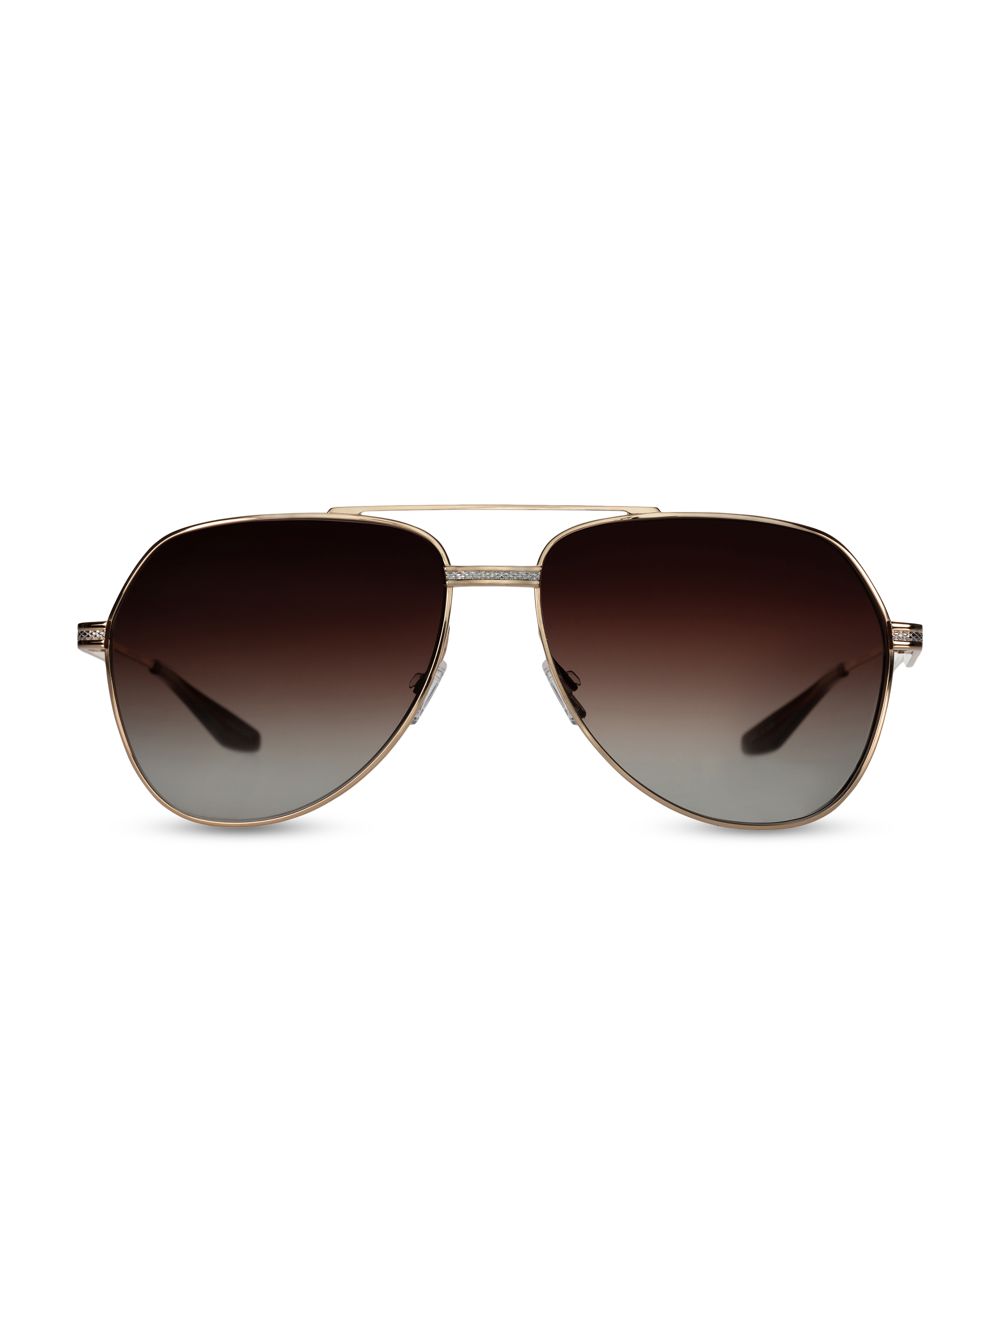 007 Legacy Солнцезащитные очки-авиаторы 61MM Barton Perreira, золотой солнцезащитные очки barton perreira x teddy vonranson 55mm barton perreira